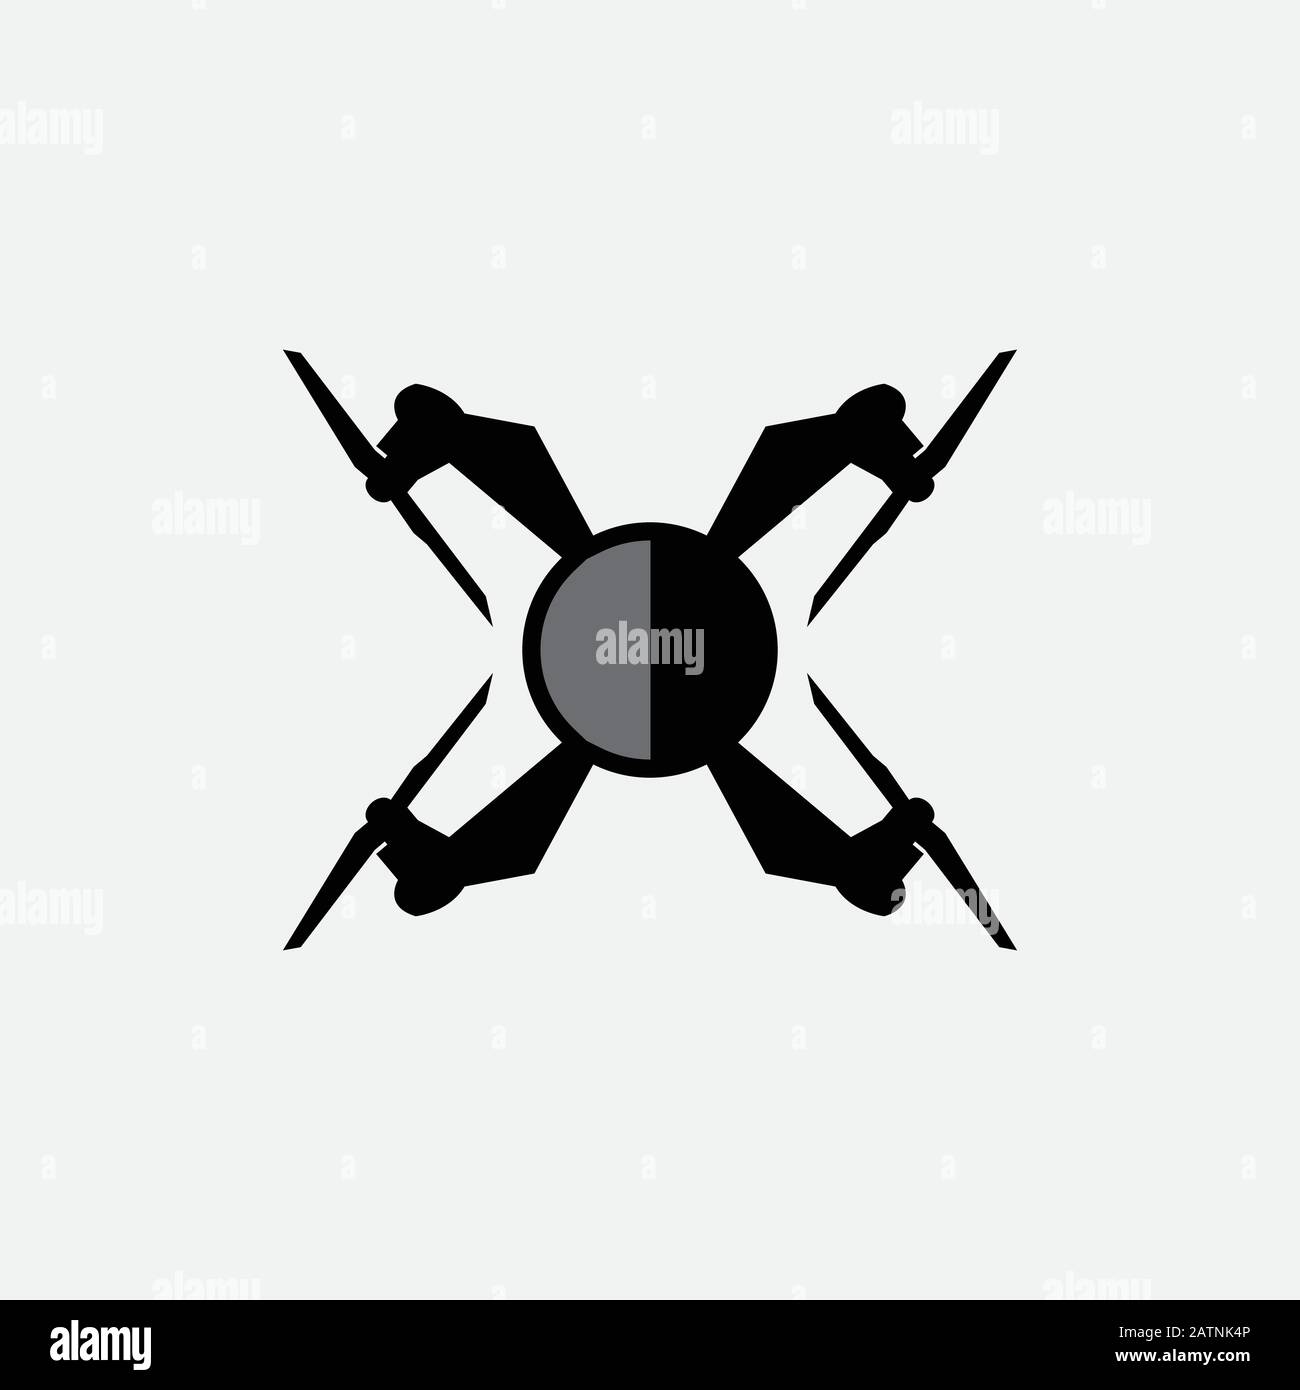 Dronensymbol für Logo, Website, App, ui. Abbildung: Symbol für flachen Vektor mit Drohne, EPS10 Stock Vektor